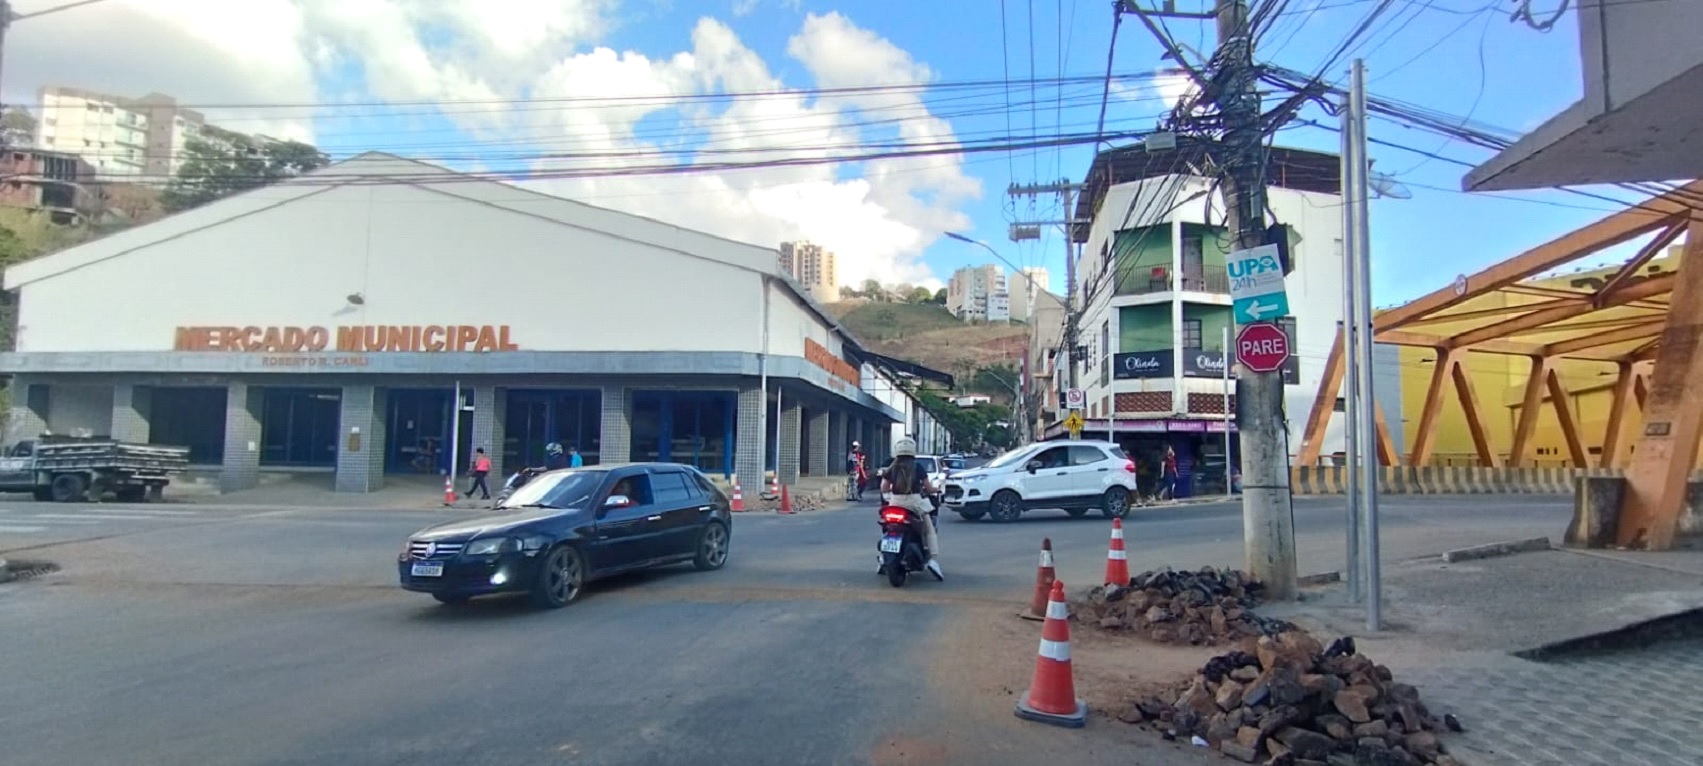 Prefeitura inicia instalação de semáforos na Praça da Estação